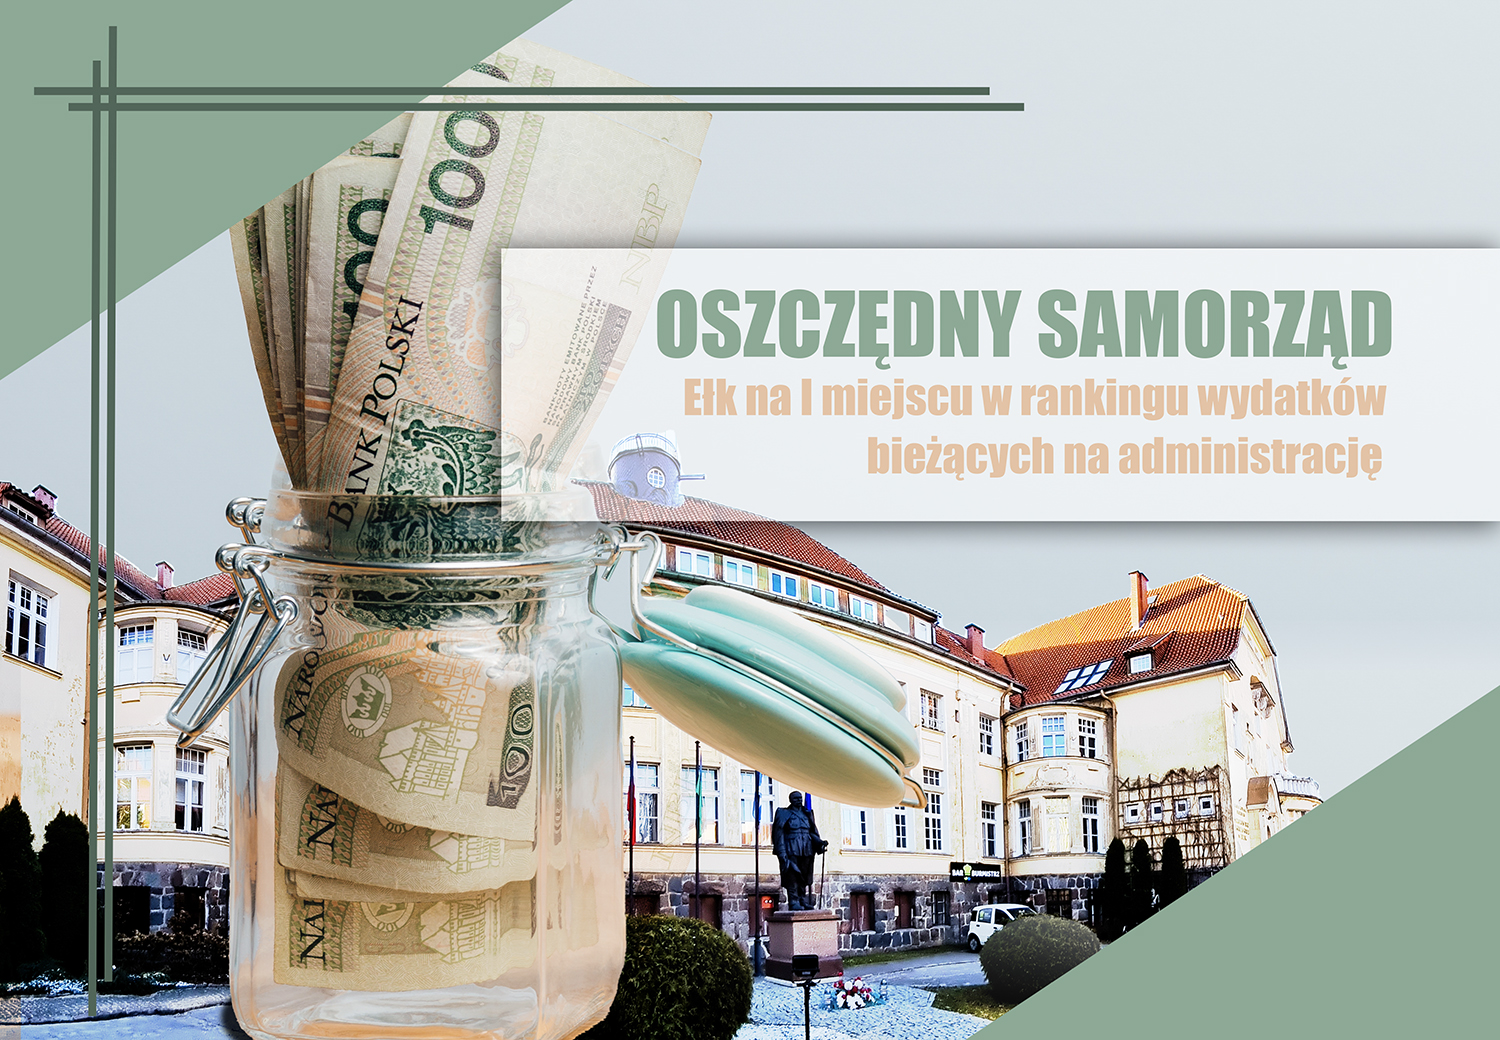 Ekonomiška vietos valdžia – Ełk pirmoje vietoje einamųjų išlaidų administravimui reitinge